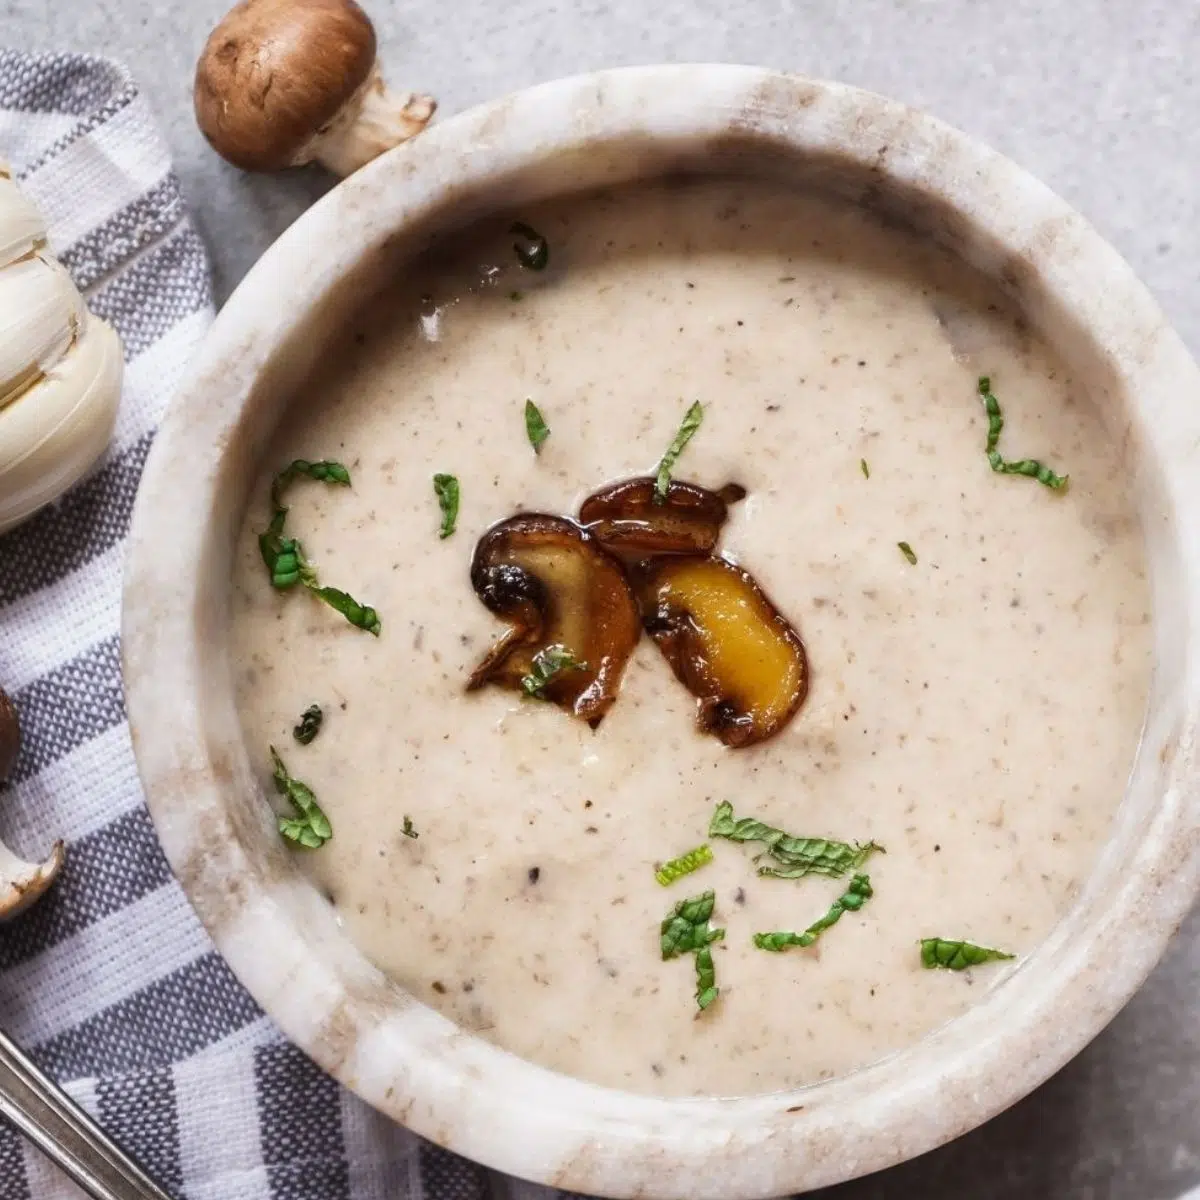 Best cream of mushroom condensed soup substitute recipe and alternatives.